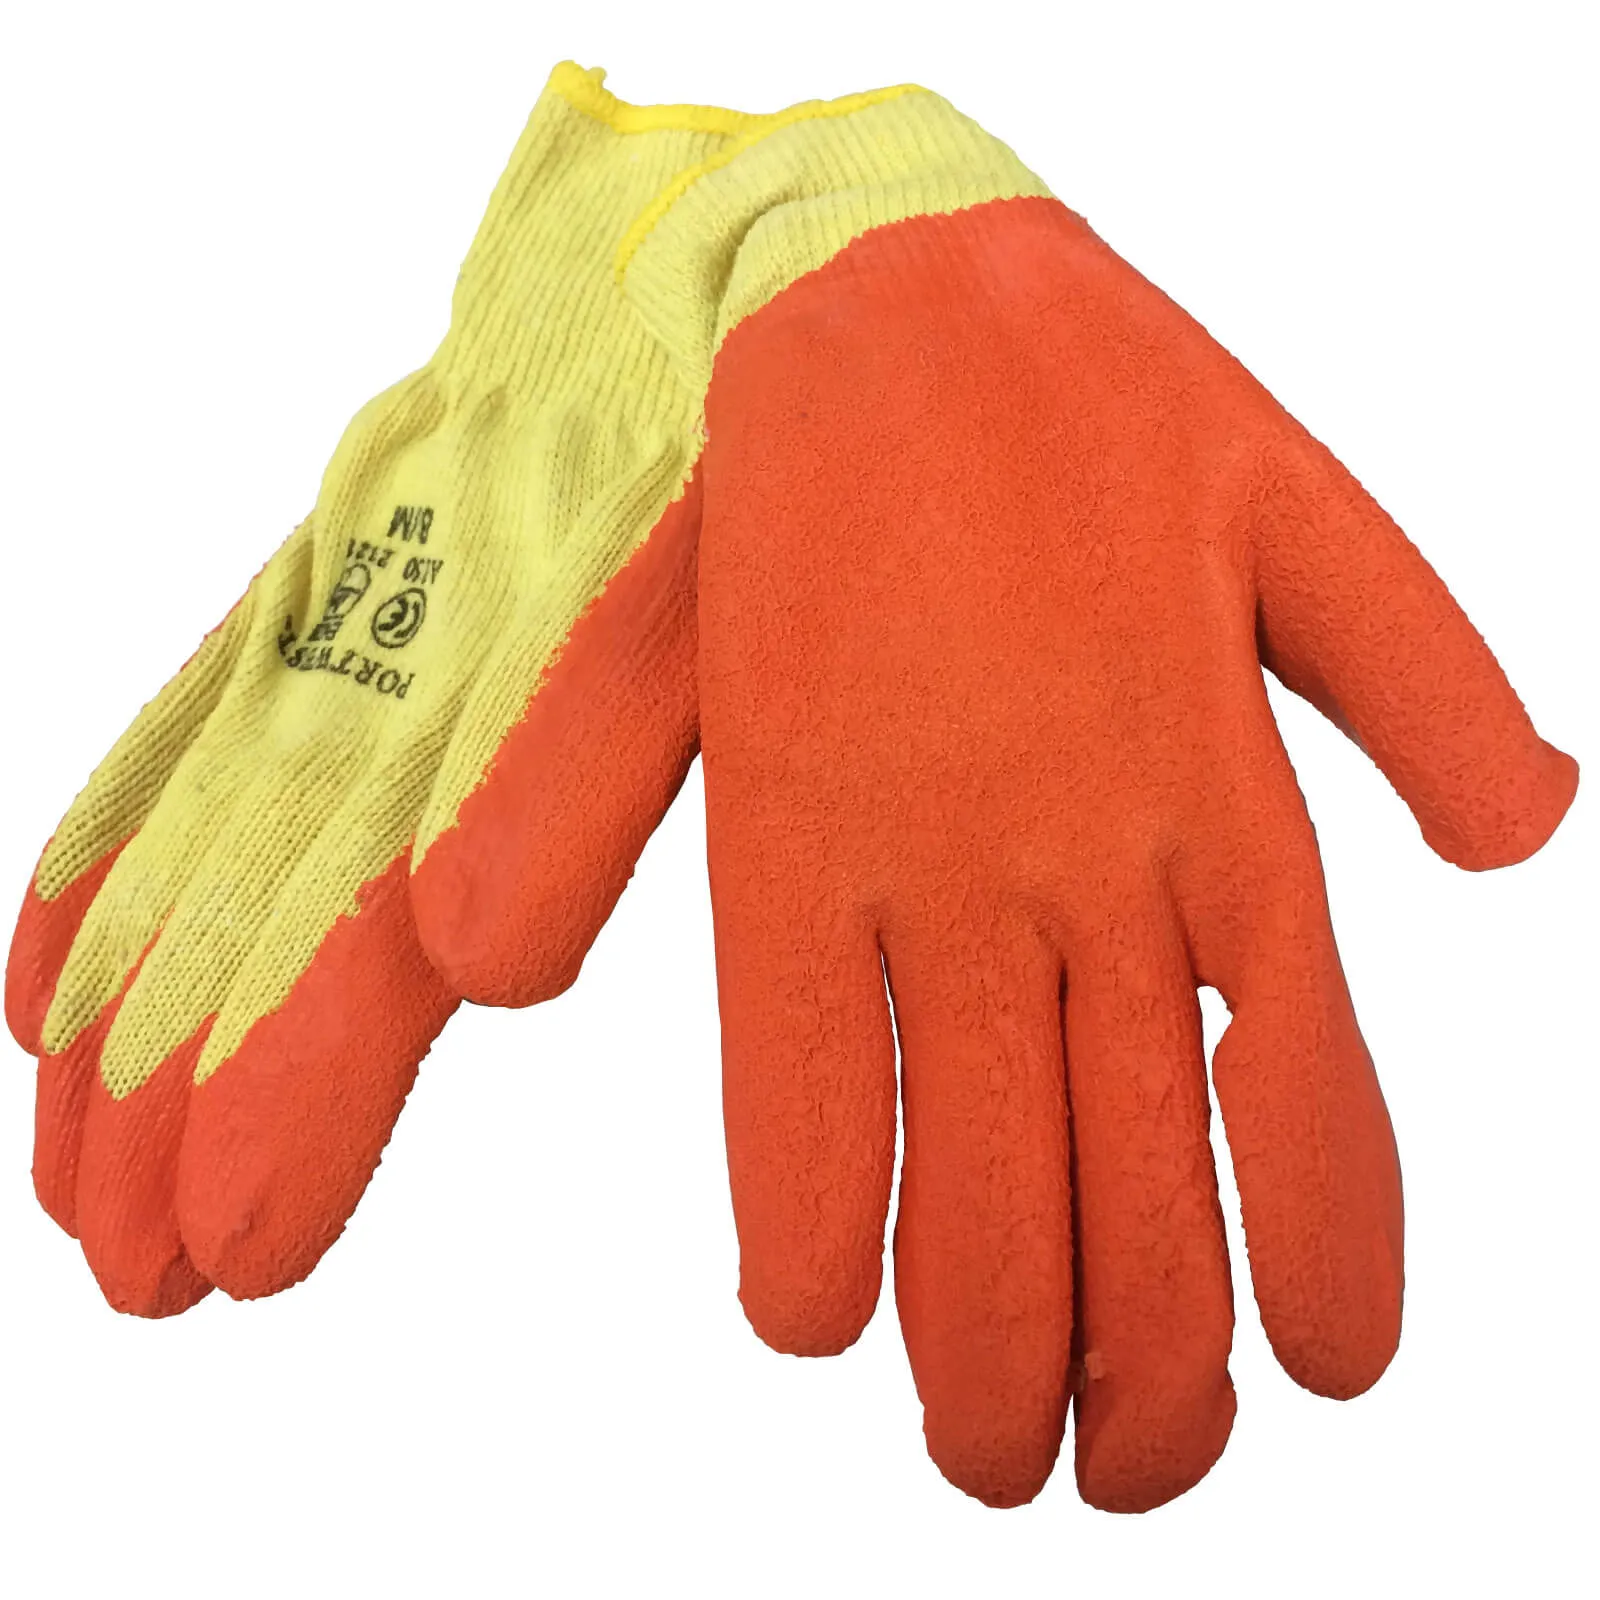 Sirius Builders Grip Gloves - M